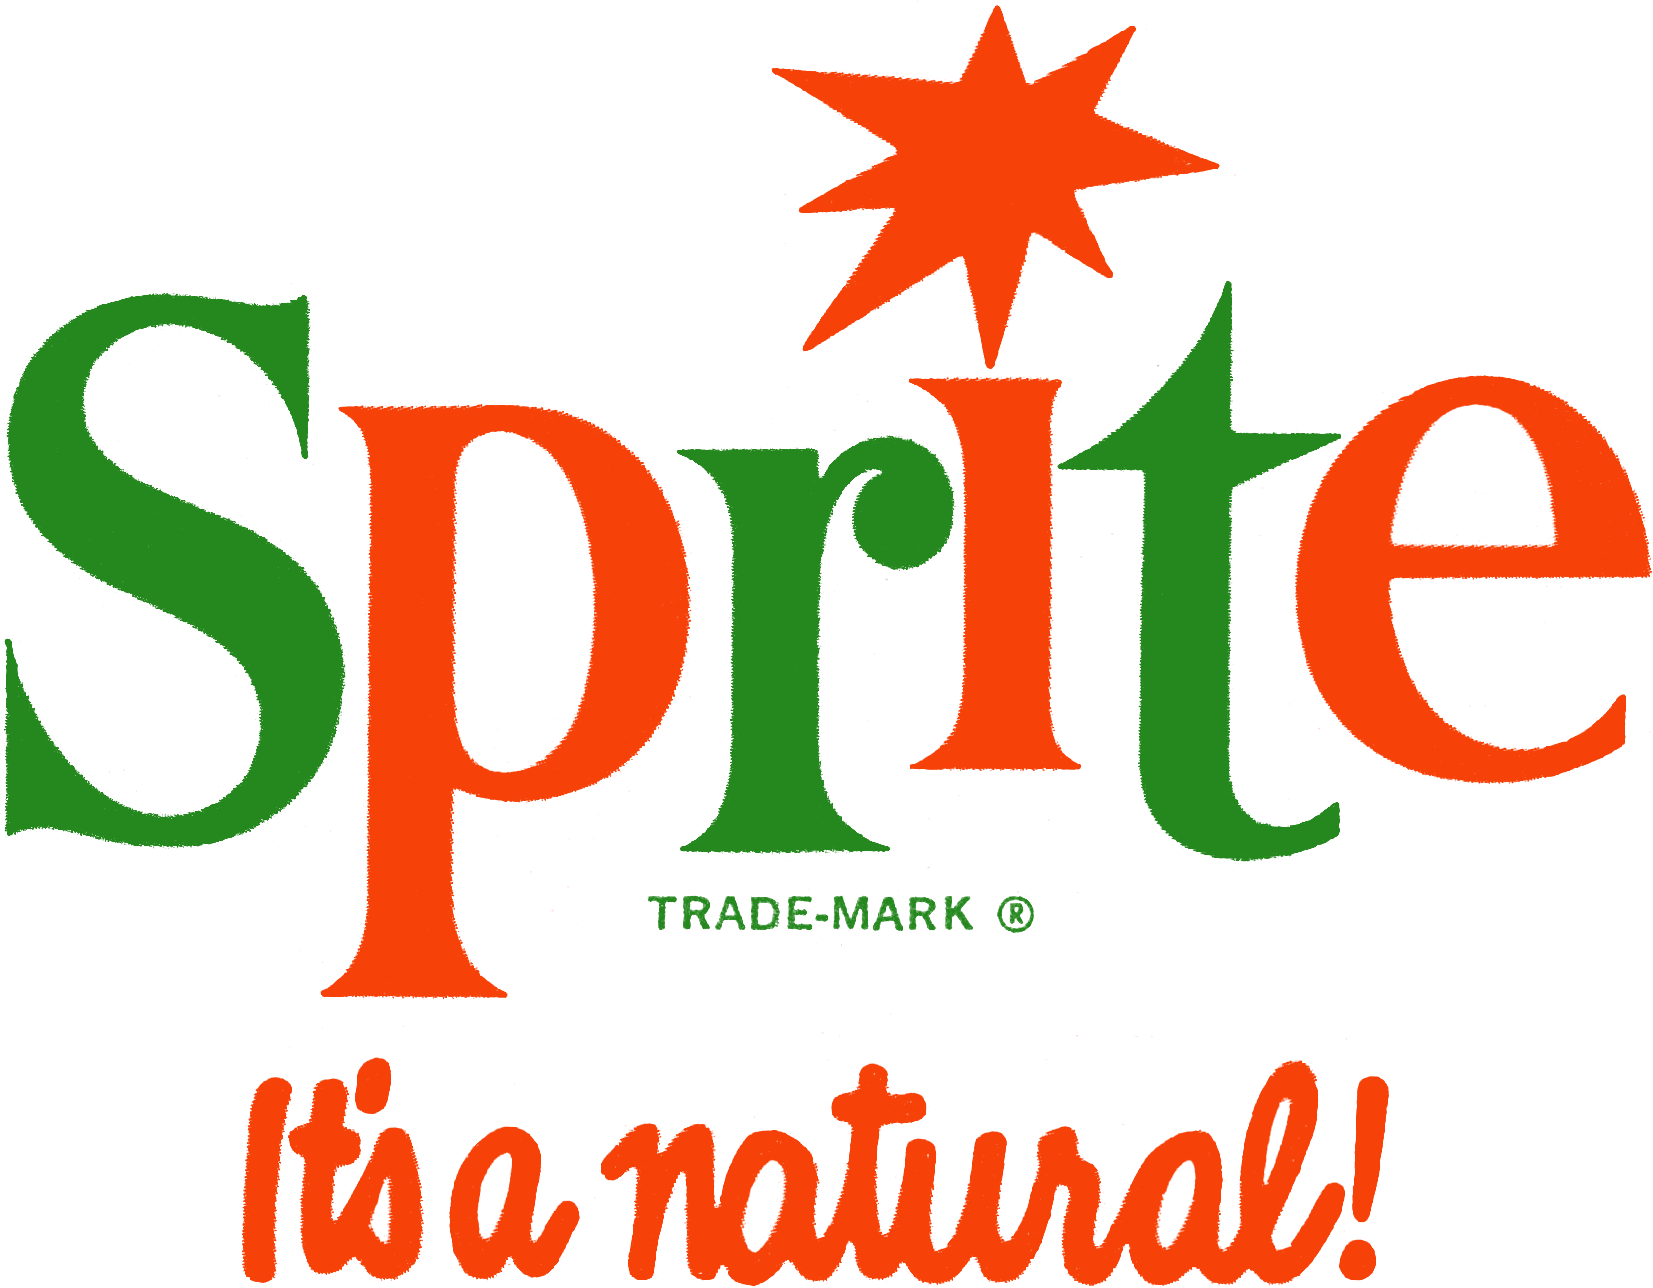 Sprite Logo - Sprite